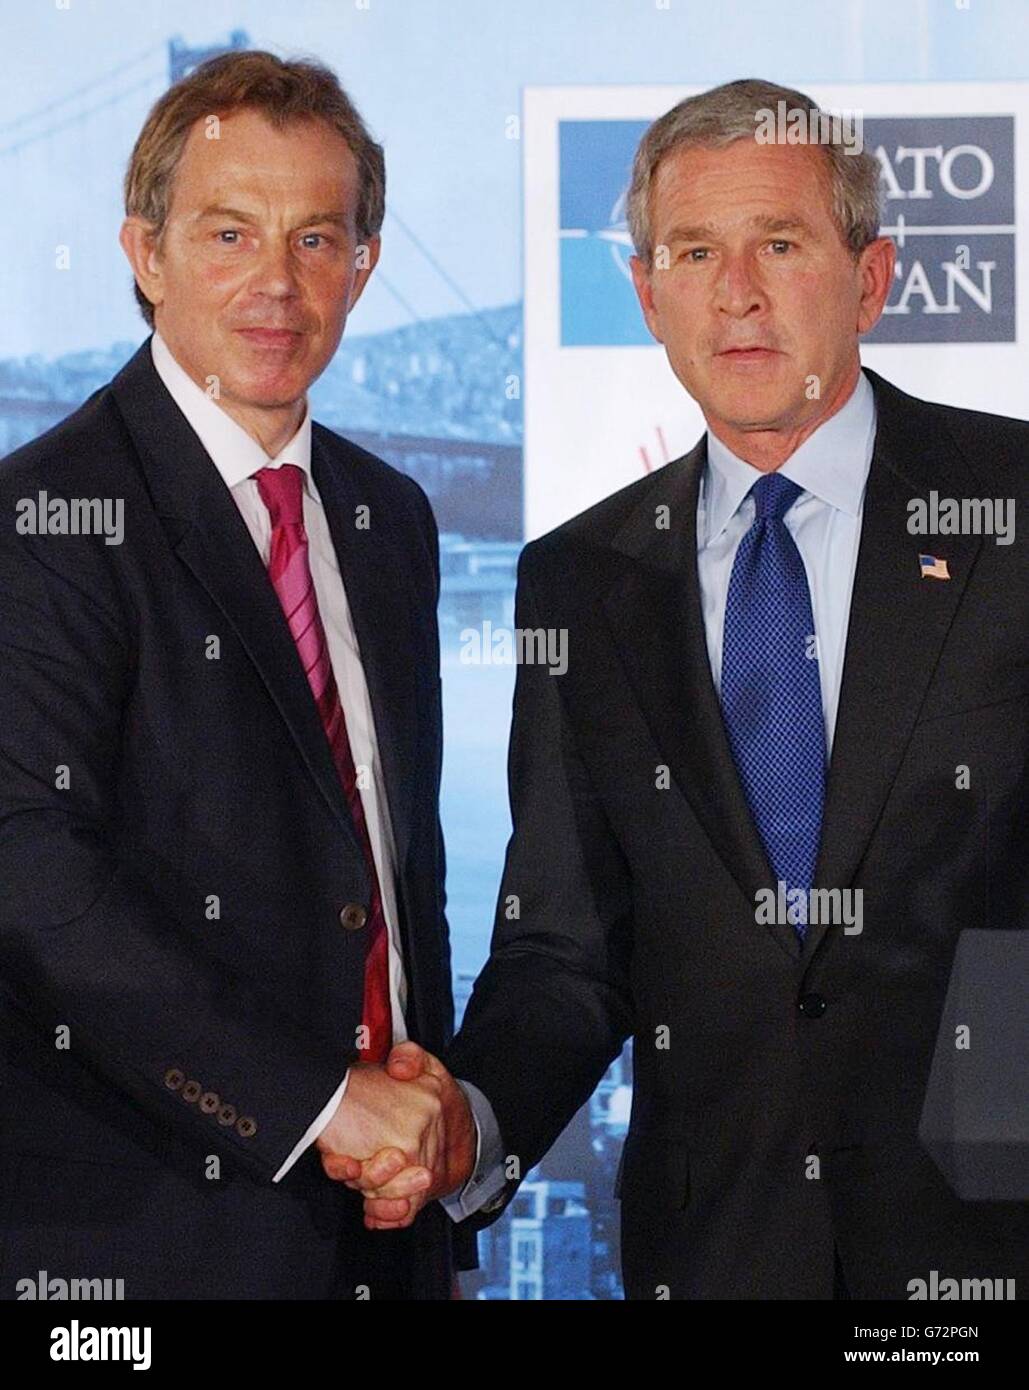 Blair et Bush - Sommet de l'OTAN Banque D'Images